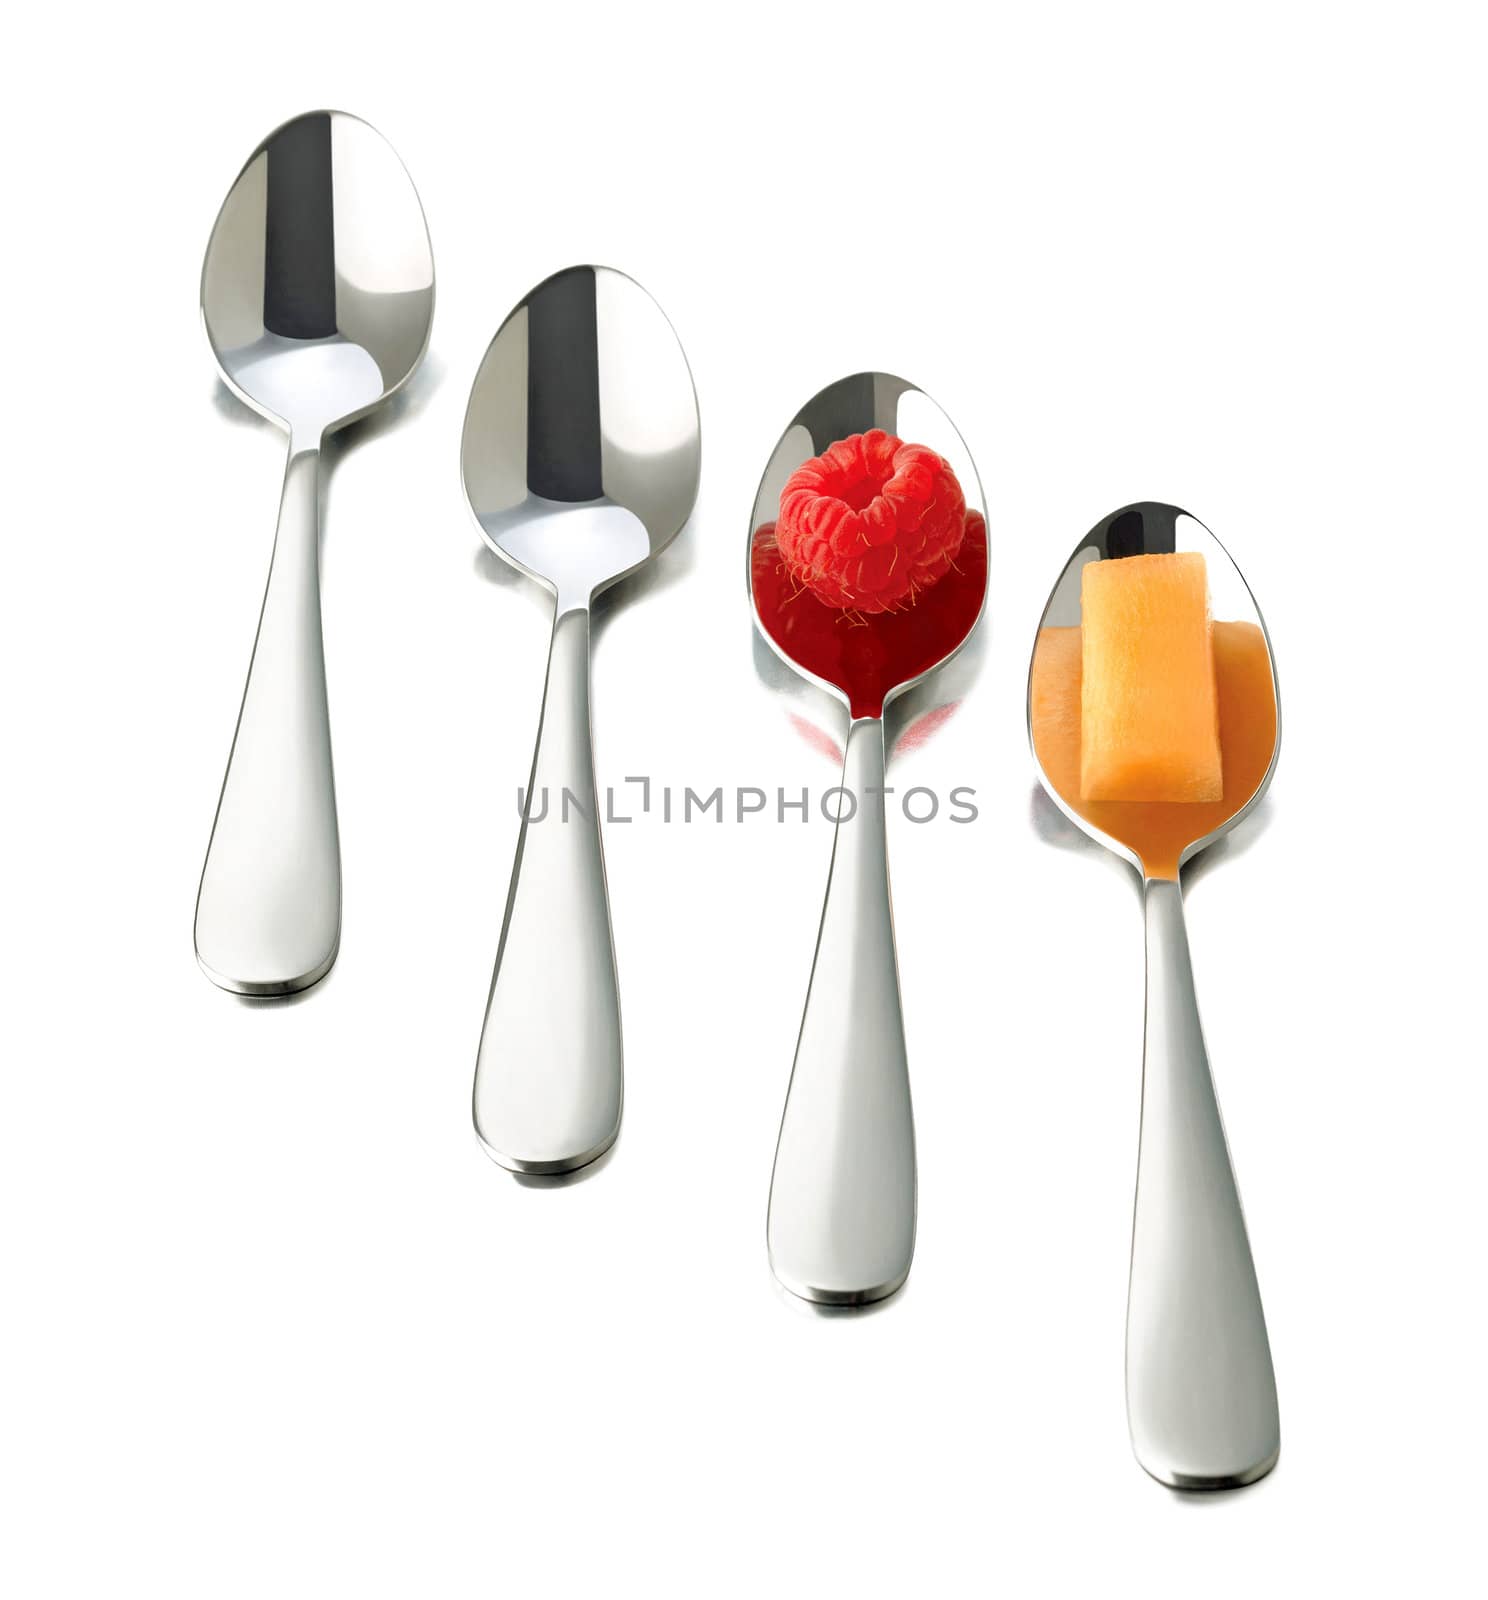 four spoons on white background. raspberry on spoon